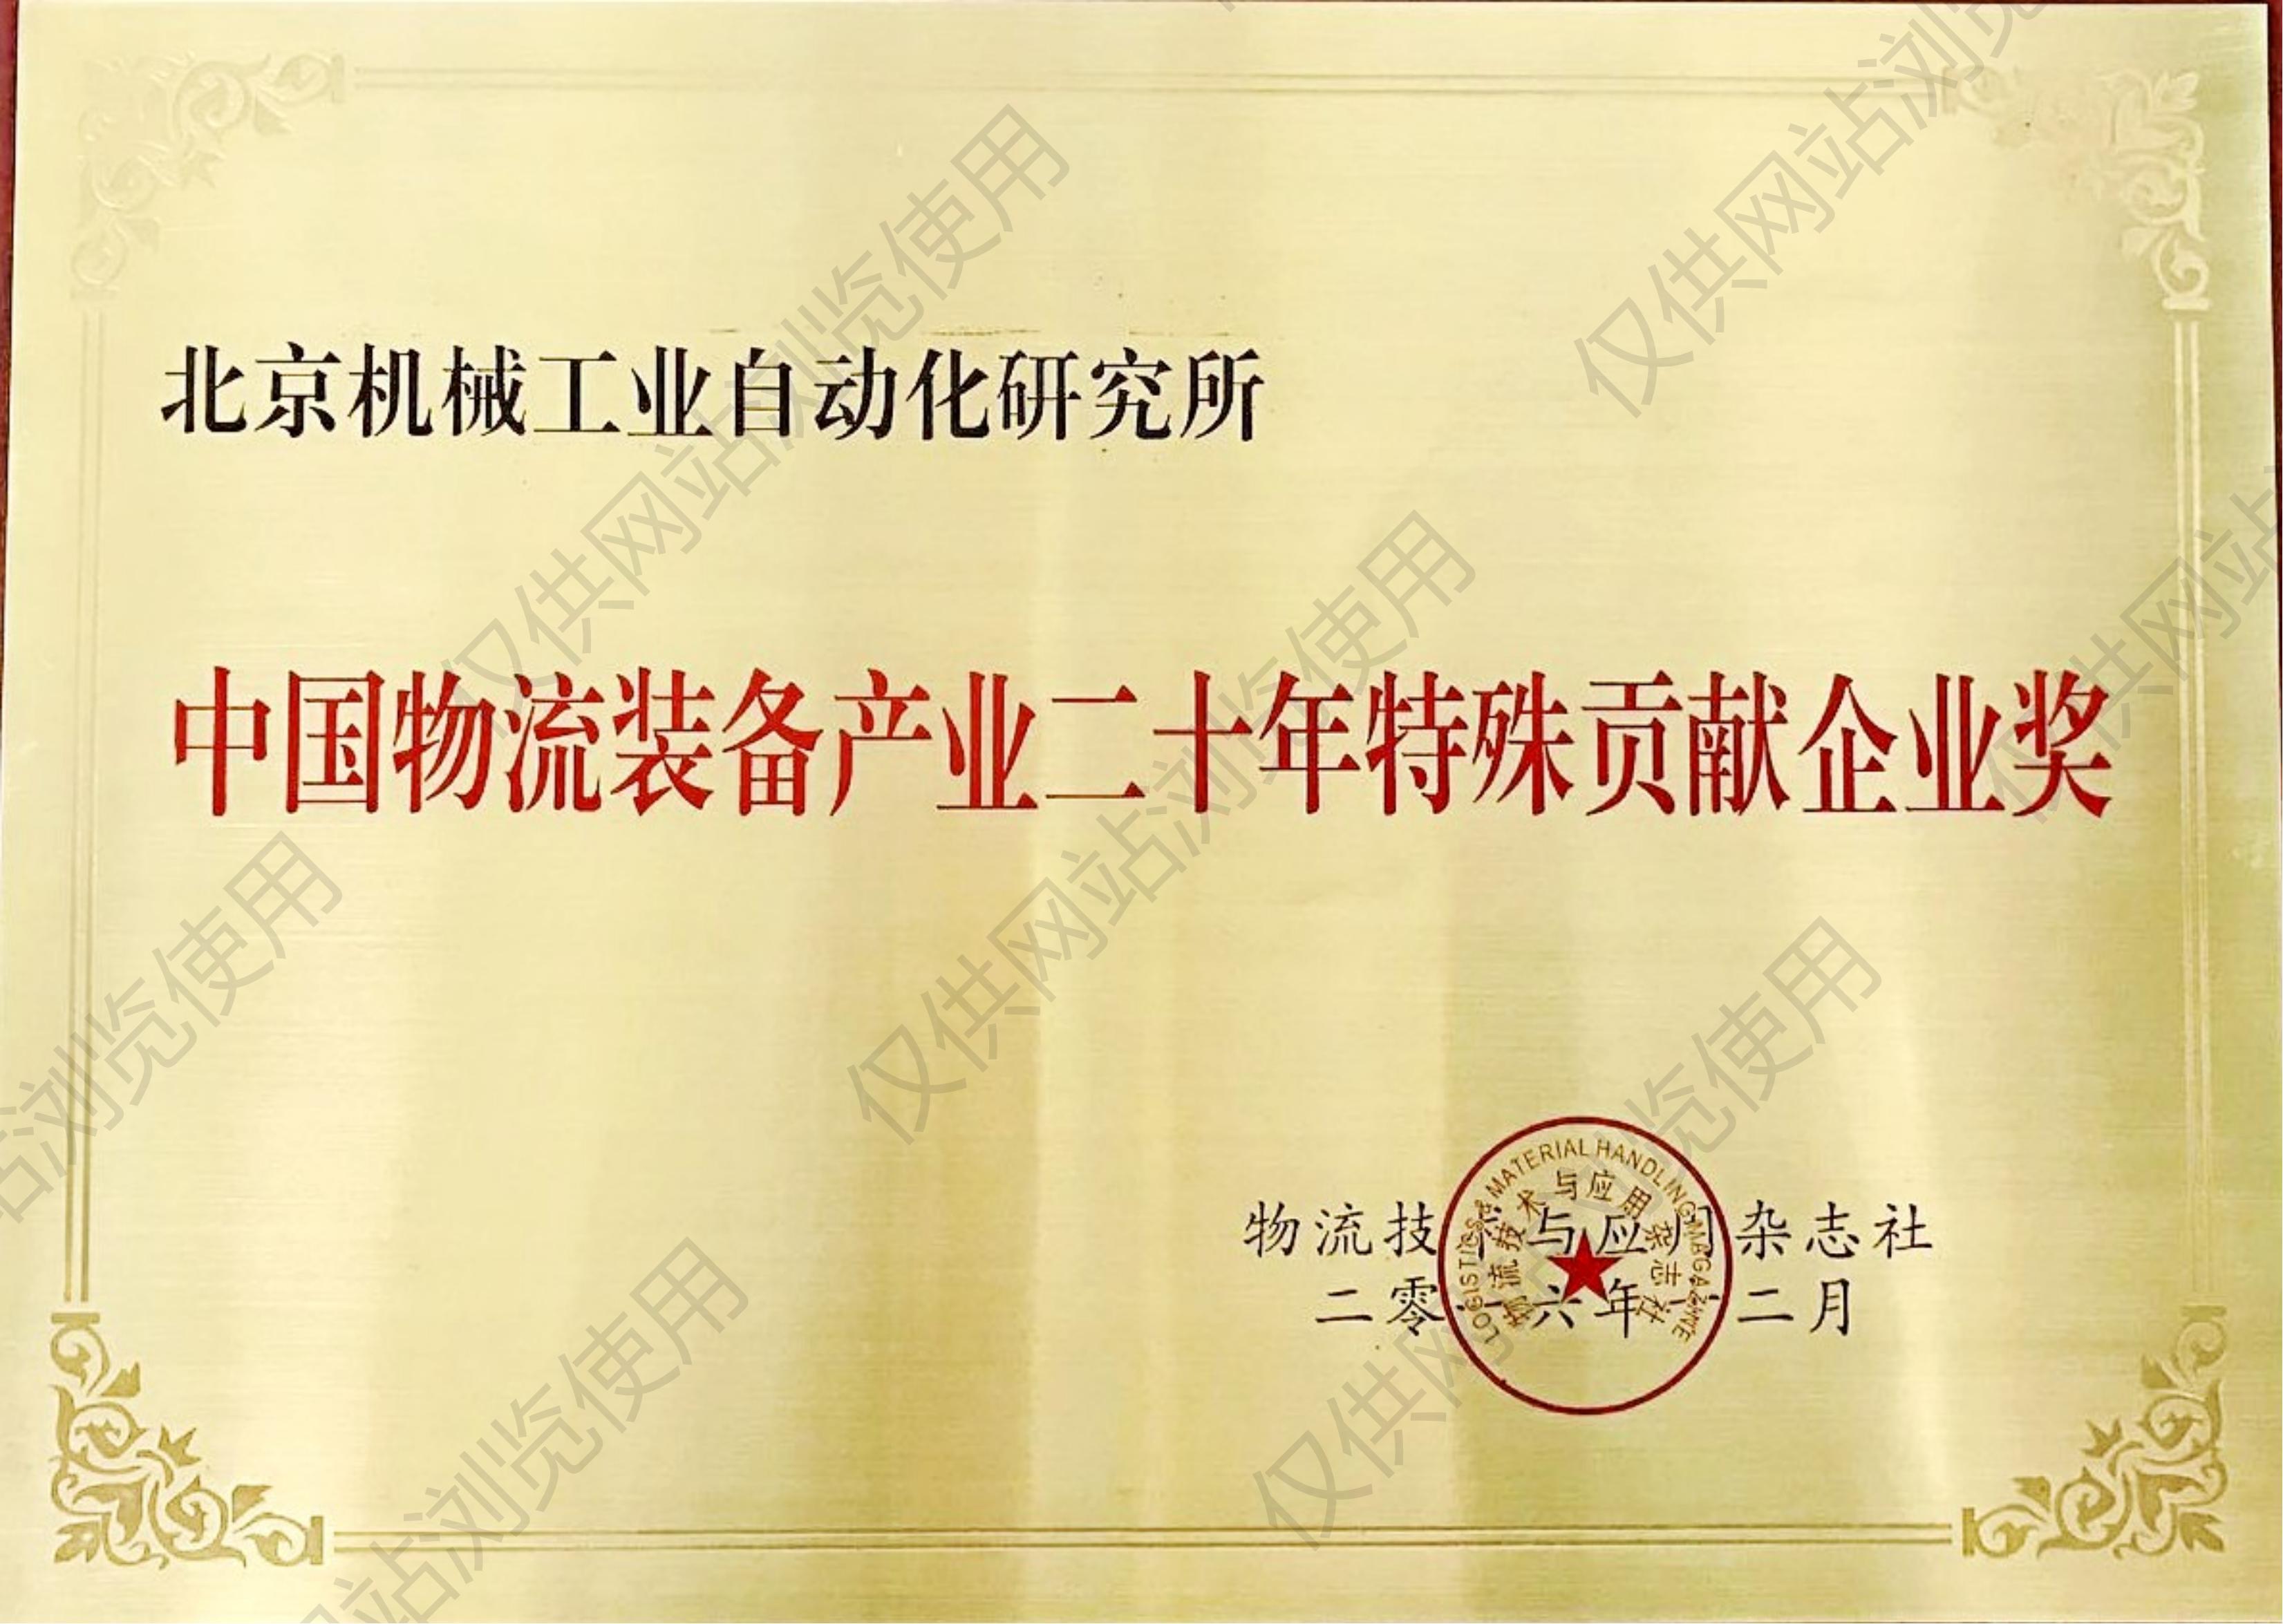 中国物流装备产业二十年特殊贡献企业奖